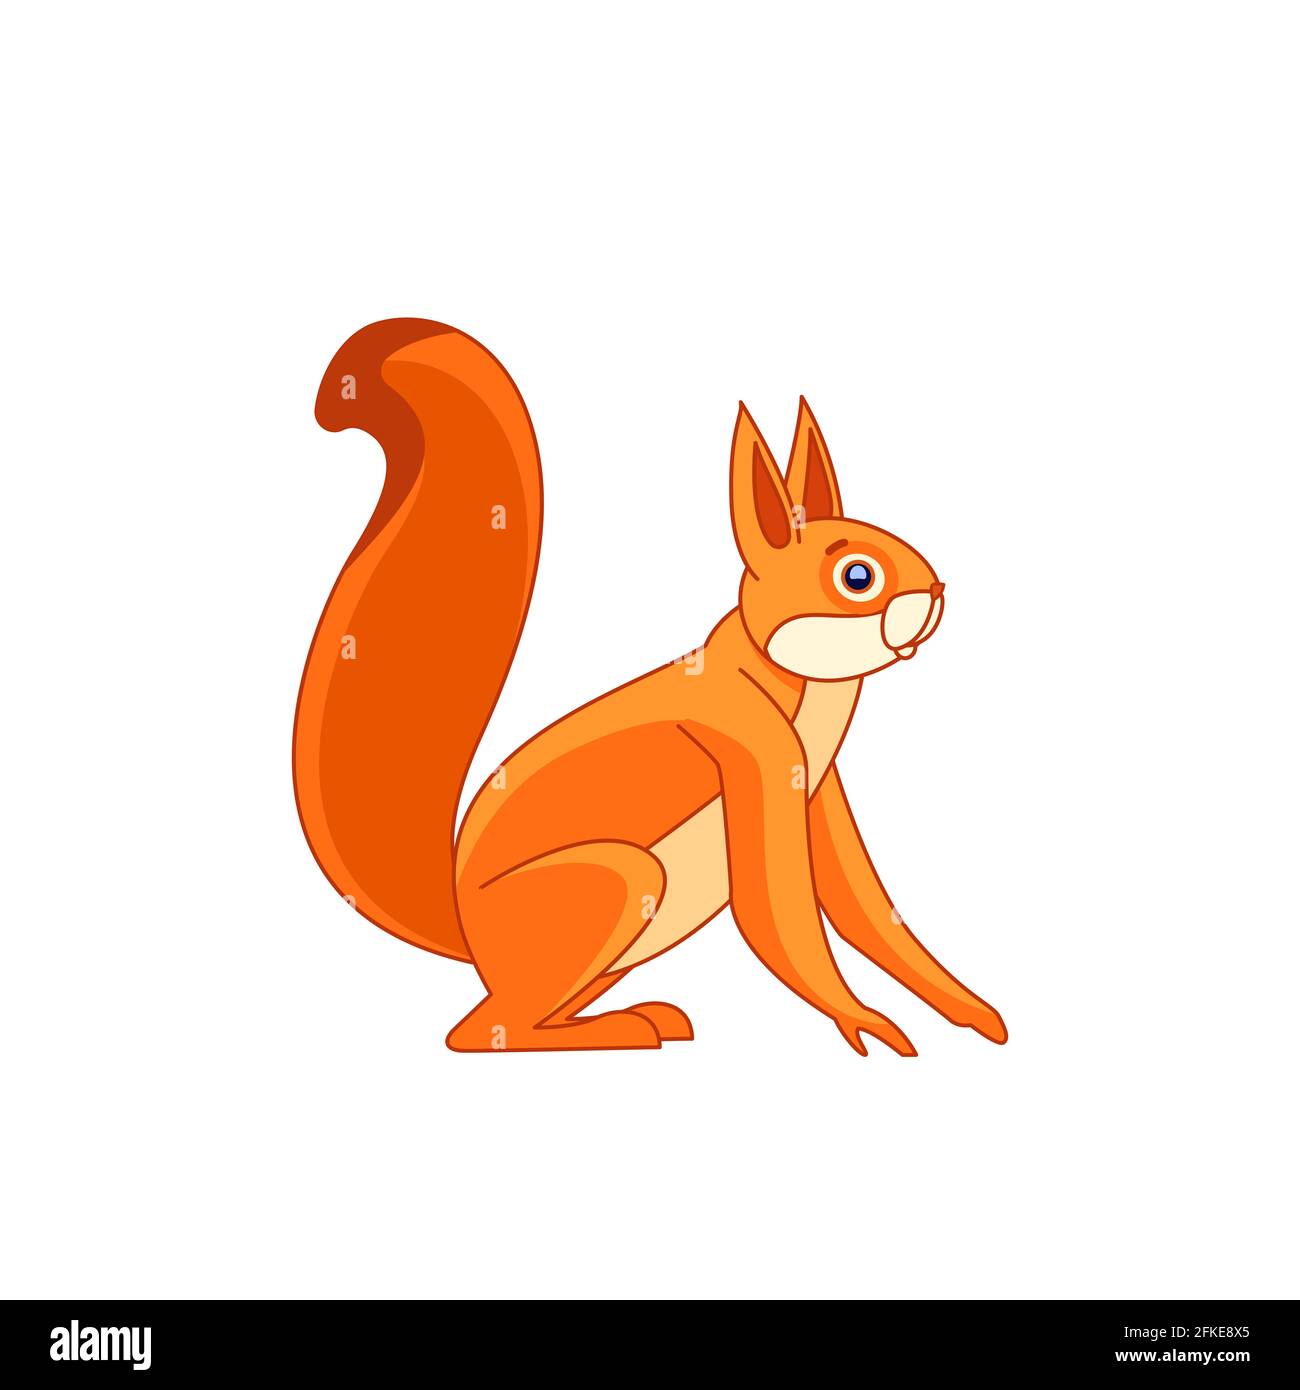 Eichhörnchen beobachtet neugierig. Cartoon-Charakter eines Nagetier Säugetier Tier. Ein wildes Waldgeschöpf mit orangefarbenem Fell. Seitenansicht. Vektorgrafik flach Stock Vektor